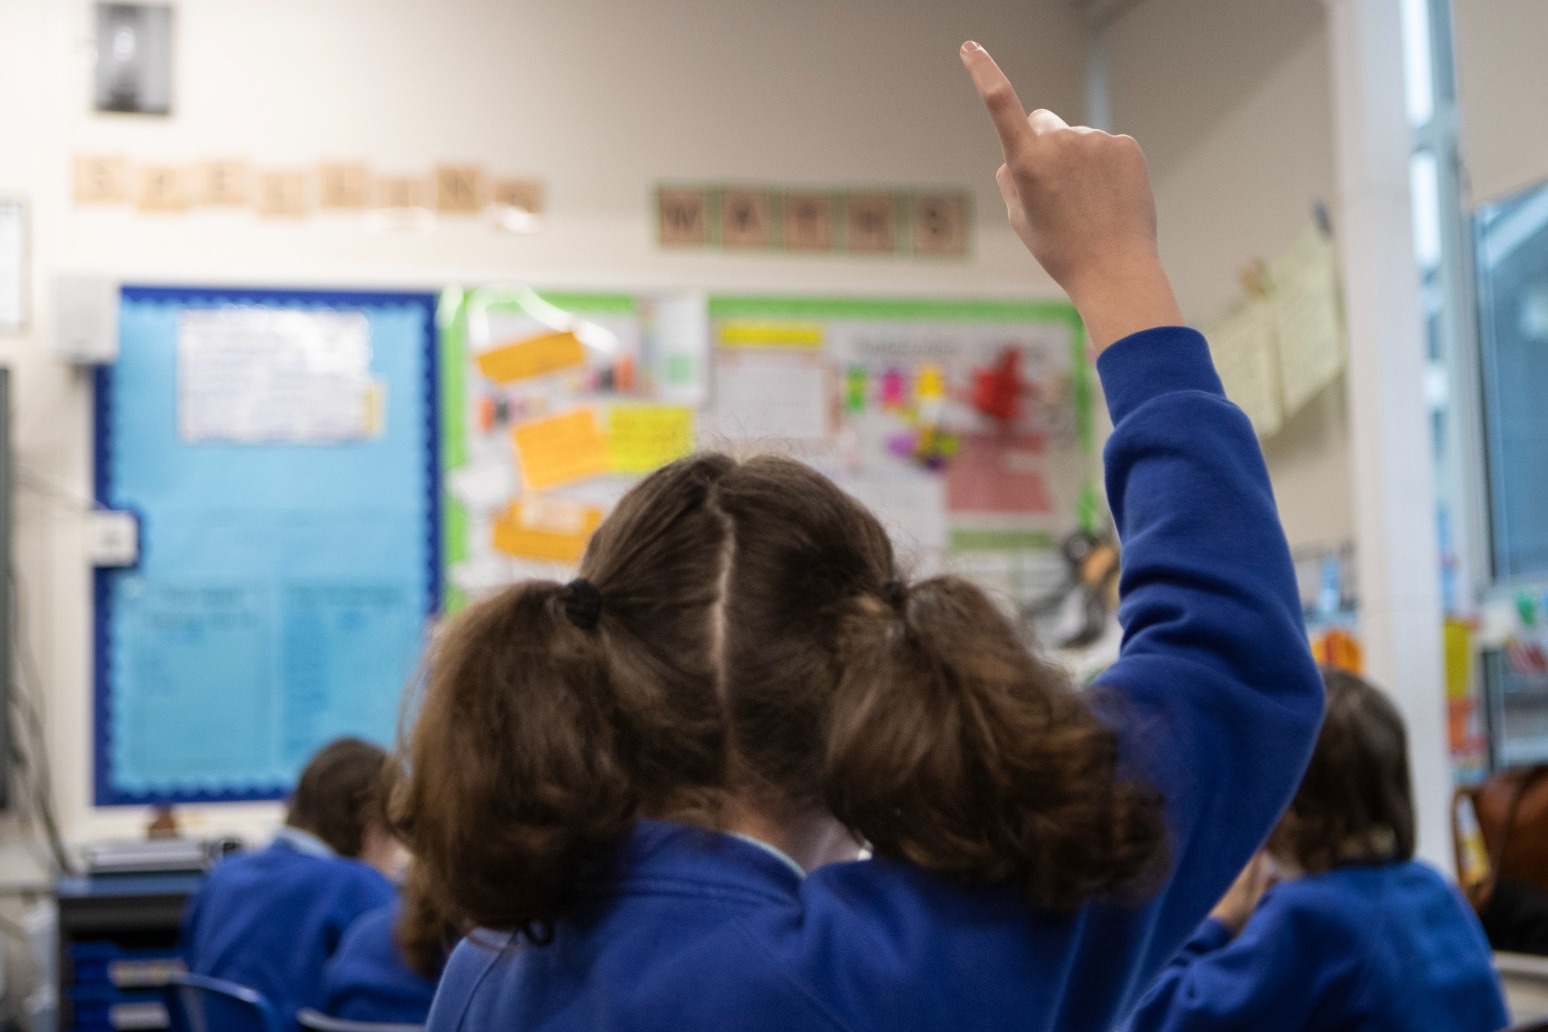 ‘Bonds of trust’ broken between families and schools, says report 